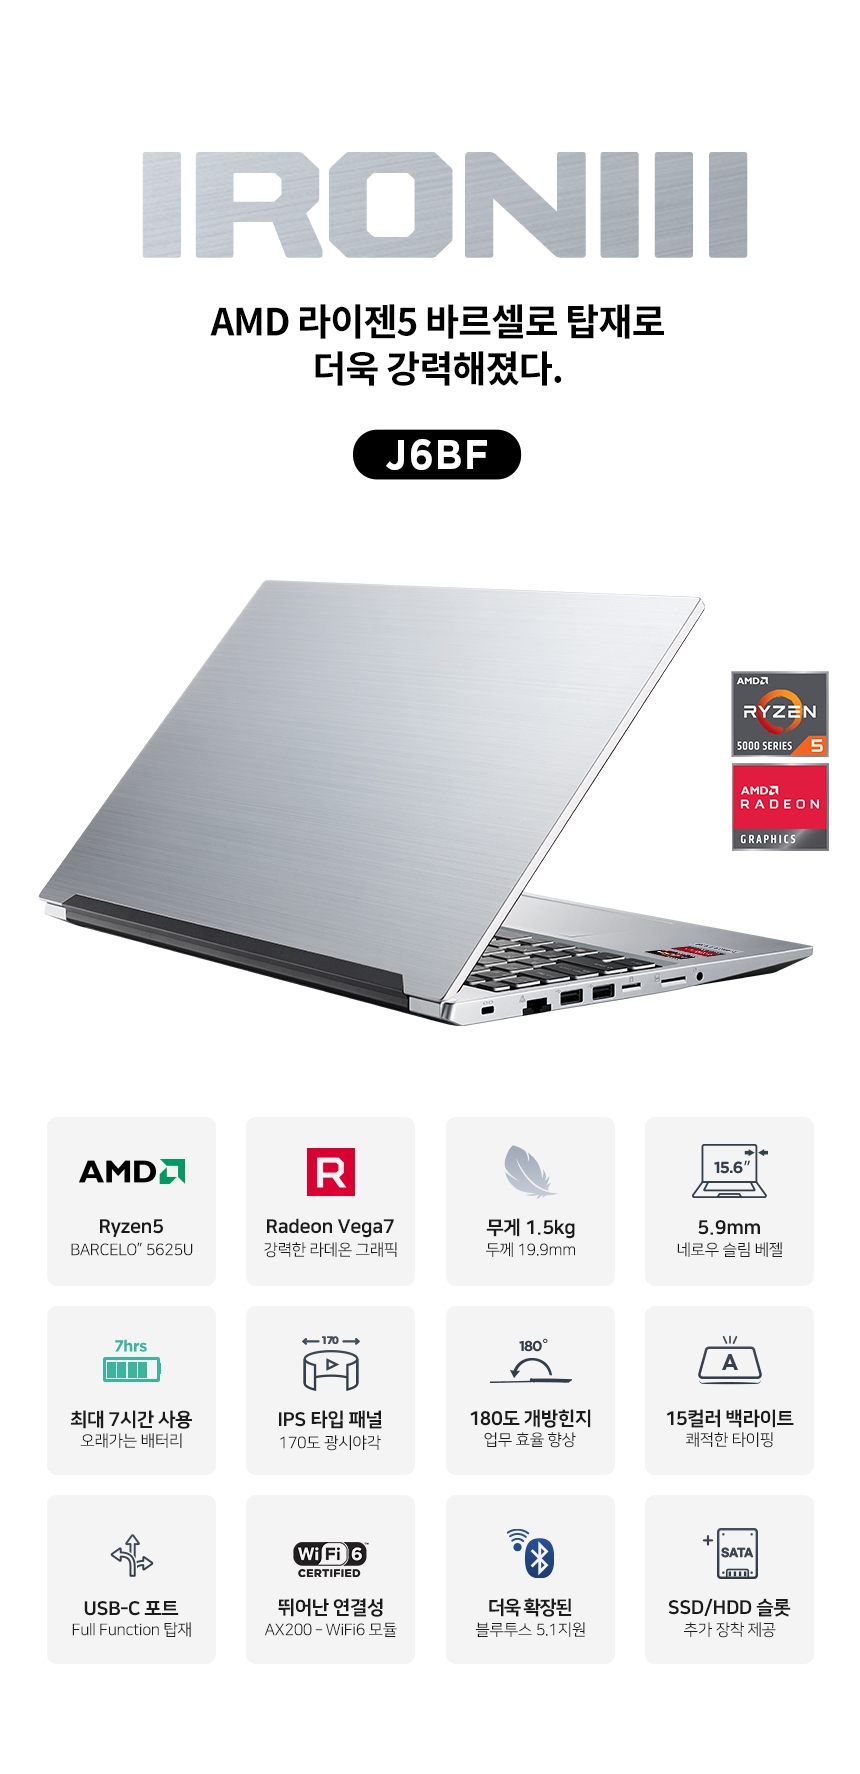 [유통 이슈] 주연테크, 22년형 신규 AMD 바르셀로 CPU탑재 노트북 ‘아이언3’ 출시 外